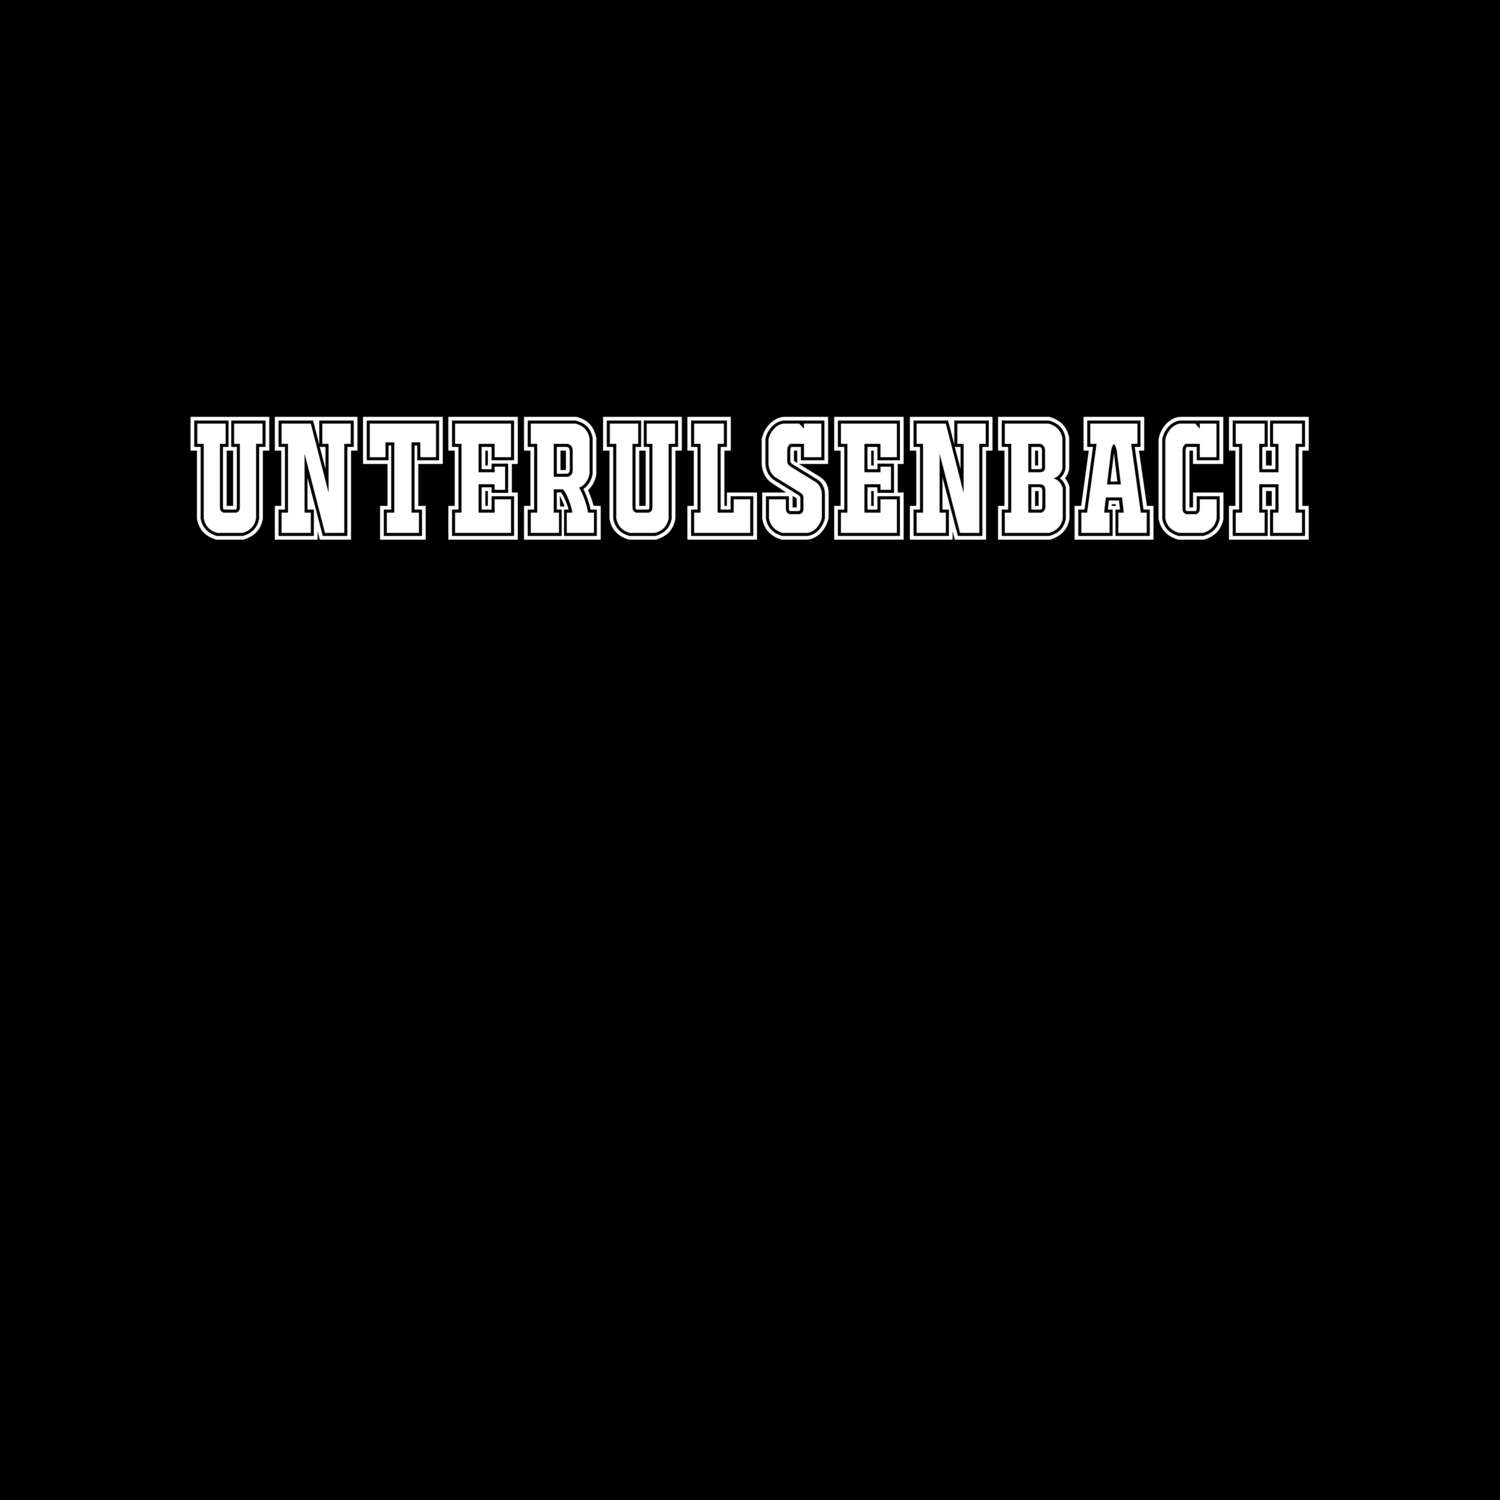 Unterulsenbach T-Shirt »Classic«